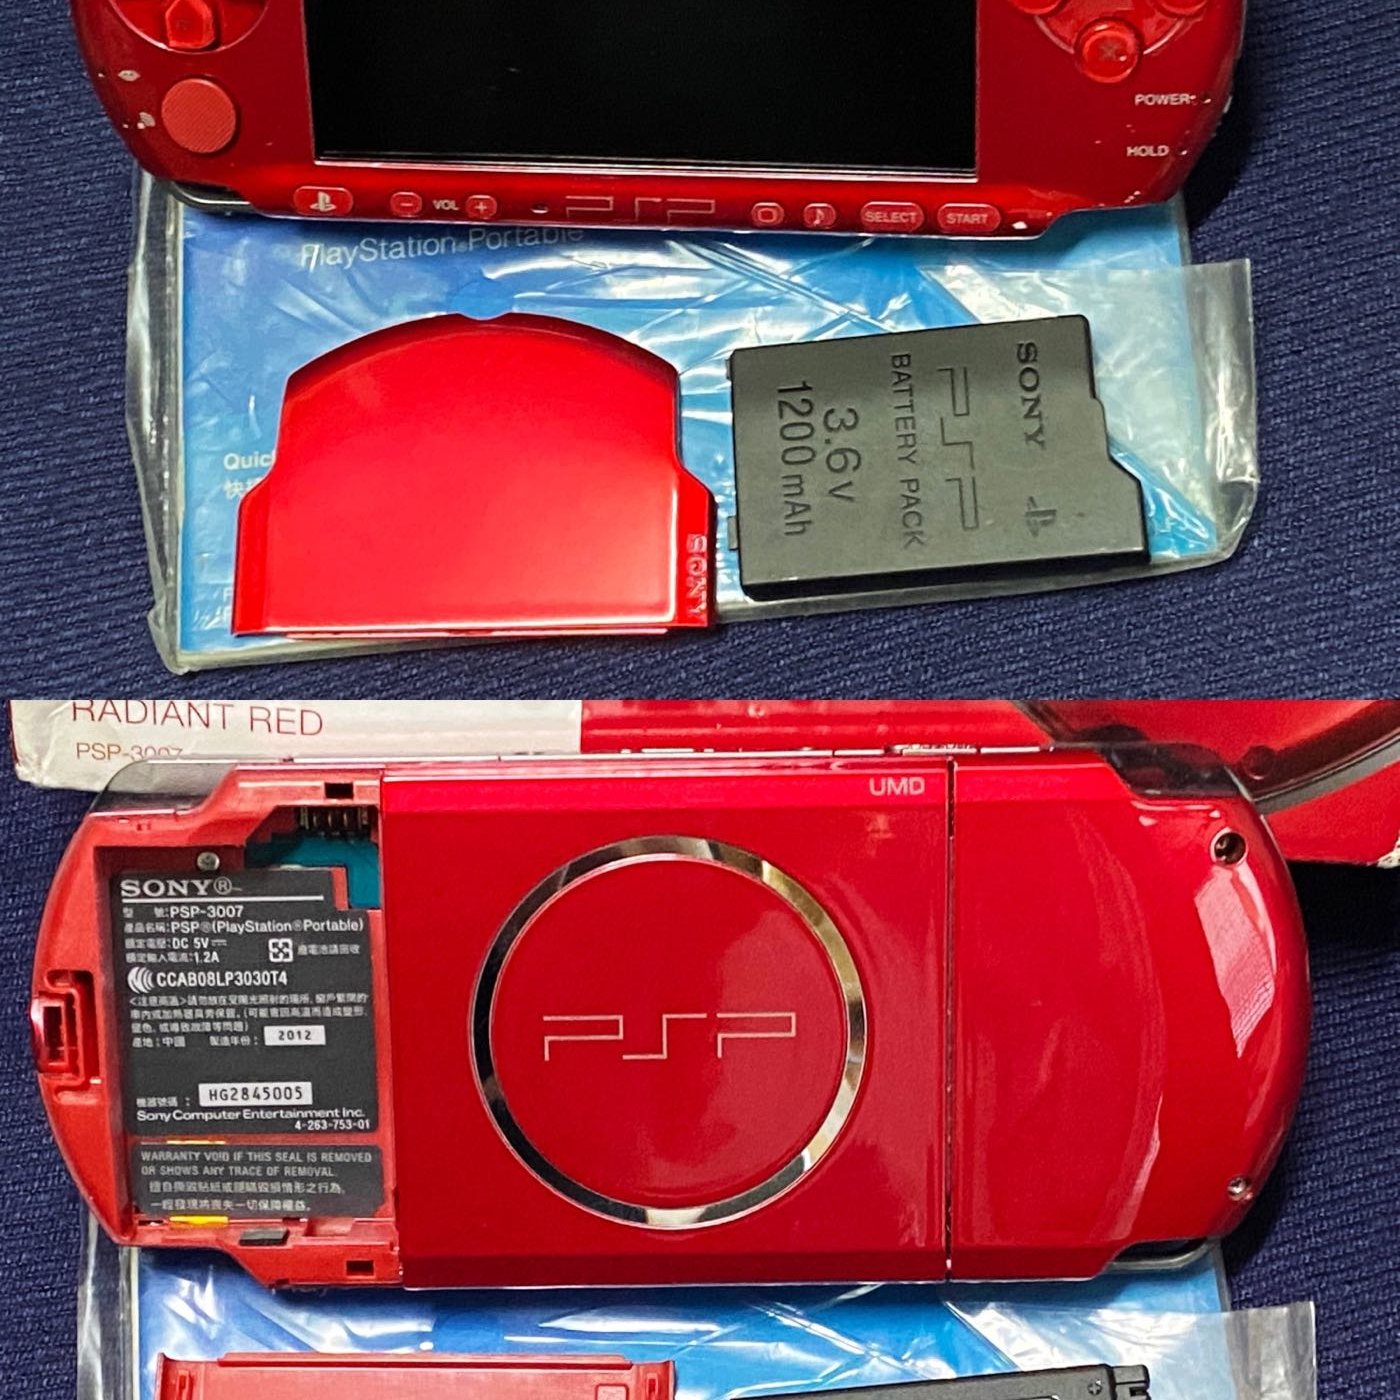 Sony PSP-3007 烈豔紅 主機盒裝、原廠遊戲片*5 二手美品